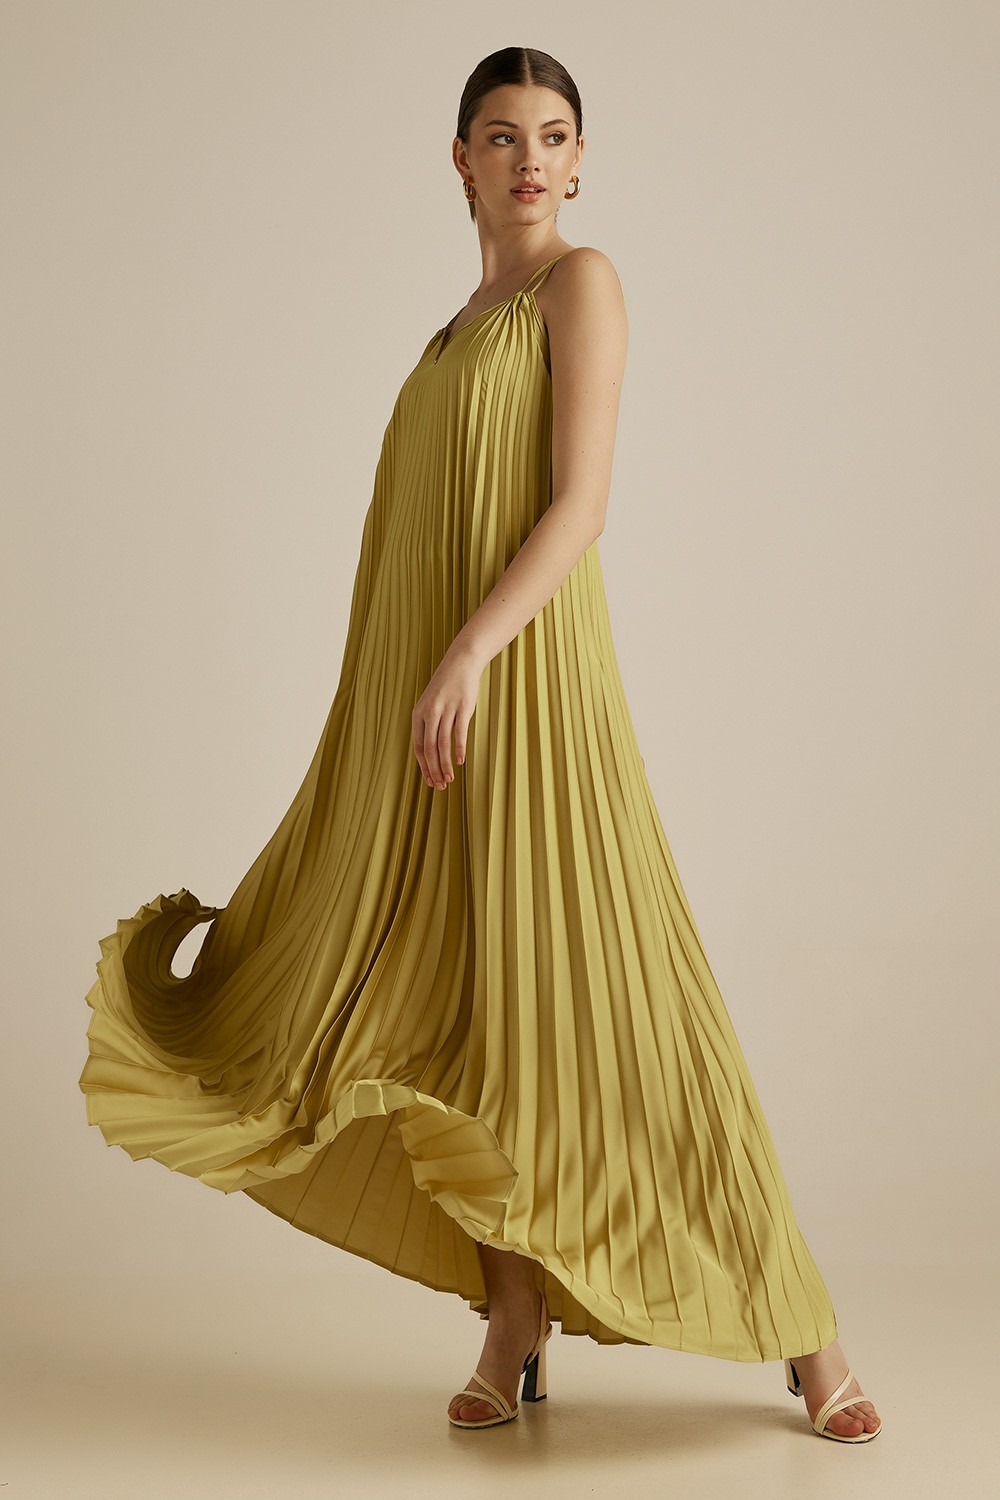 Imperial φόρεμα πλισέ με spaghetti straps